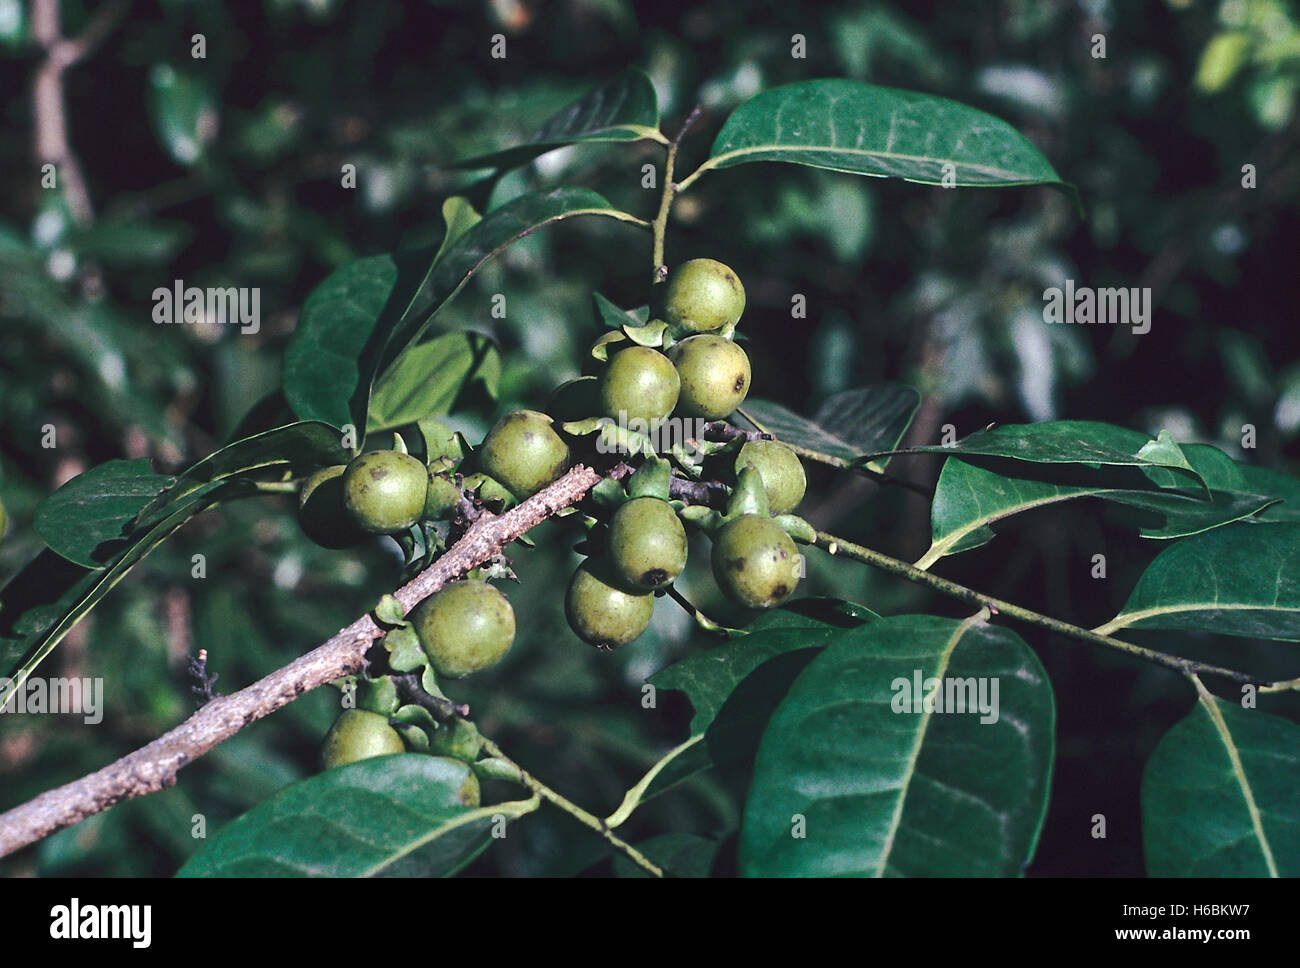 Blätter und Früchte. diospyros Sylvatica. Familie: ebenaceae. Ein großer immergrüner Baum mit einem dunklen, glatten Stamm mit Flechten gekennzeichnet. Stockfoto